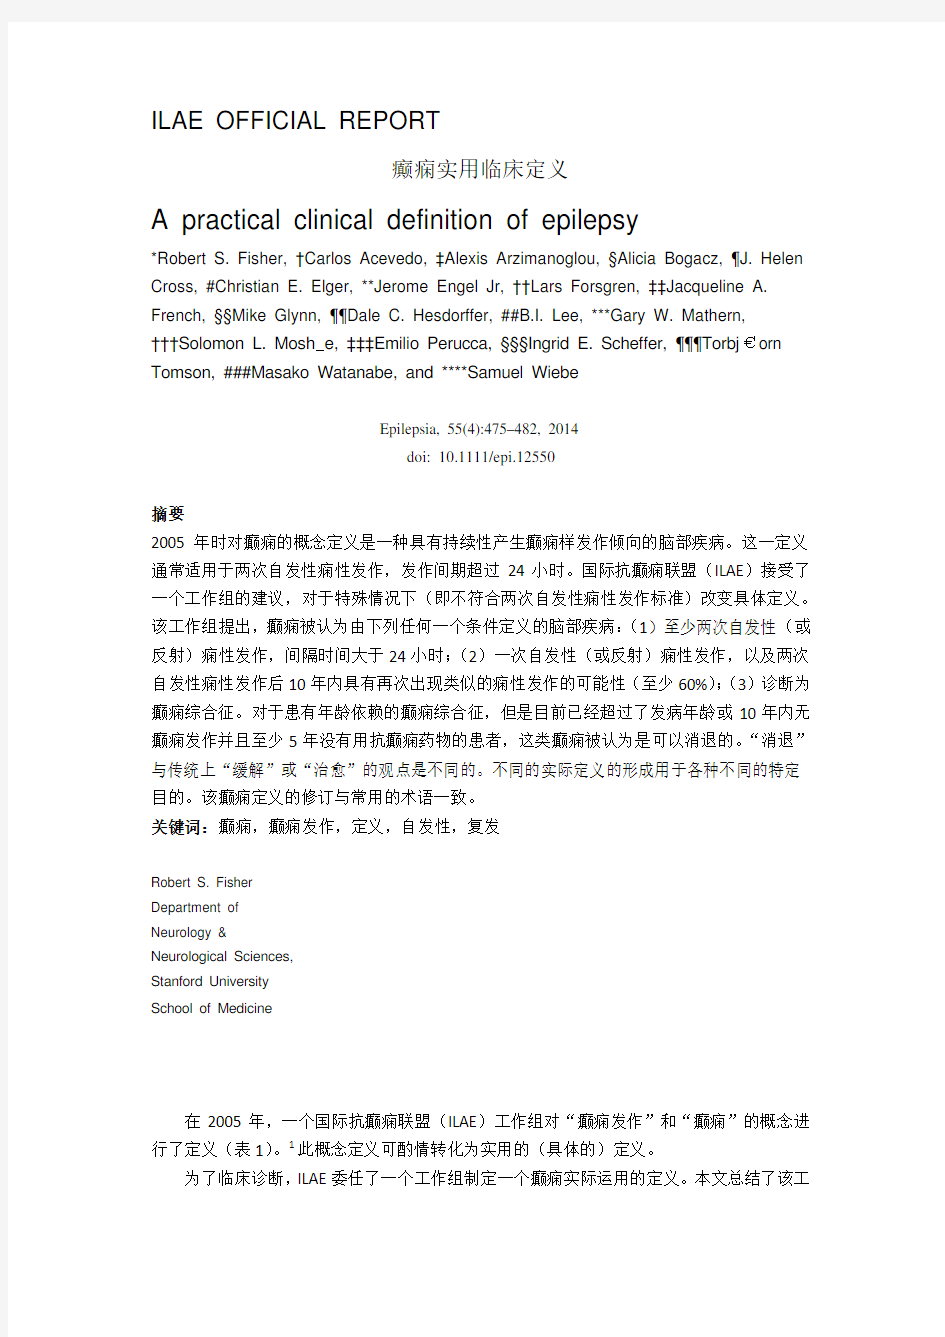 2014国际抗癫痫联盟-癫痫实用性定义-中文版